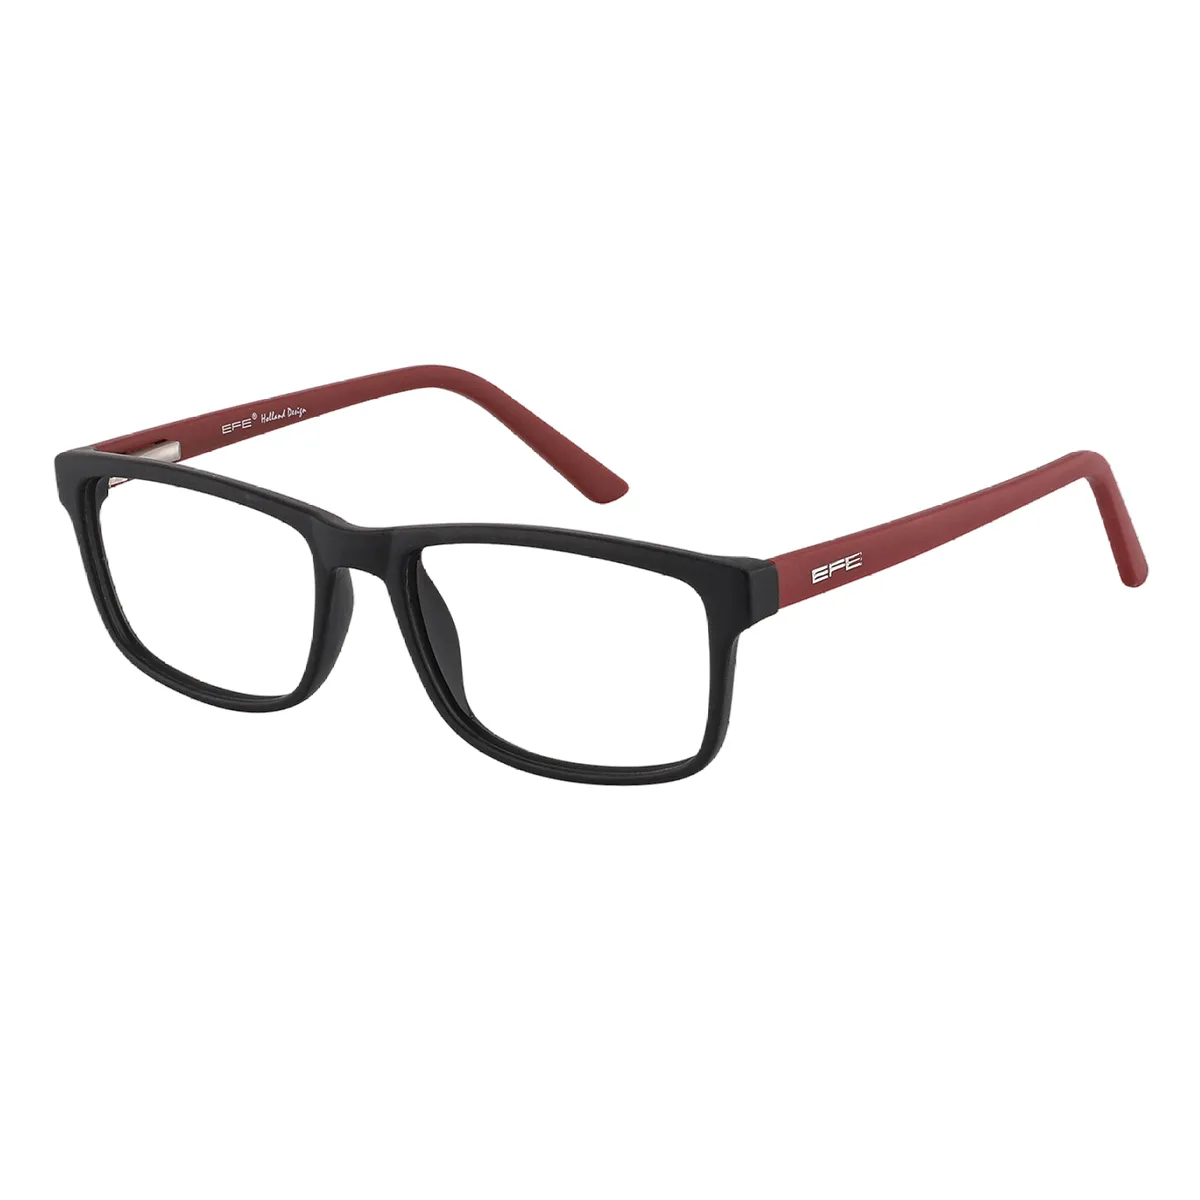 Classic Rectangle Black-Red Glasses for Men & Women